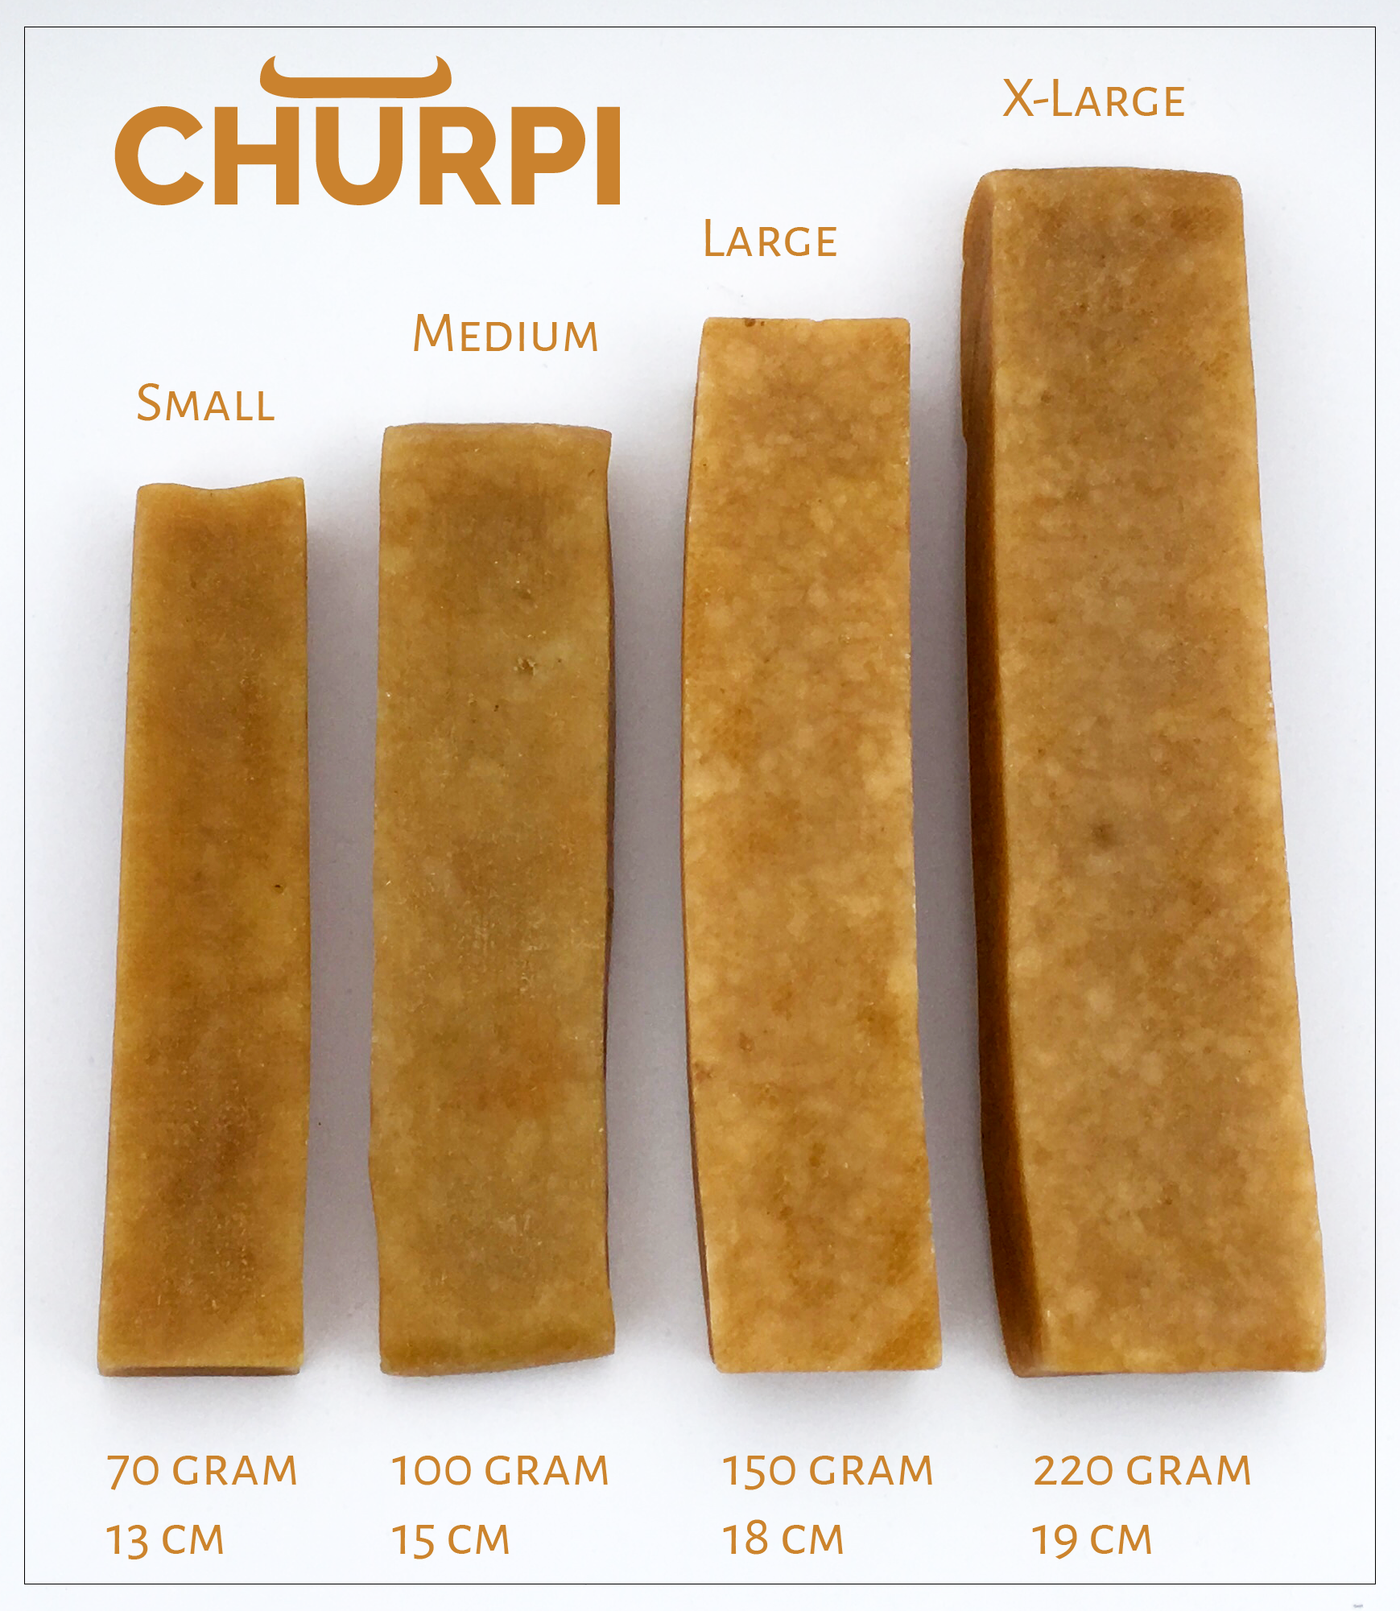 Churpi - Large (150gr)